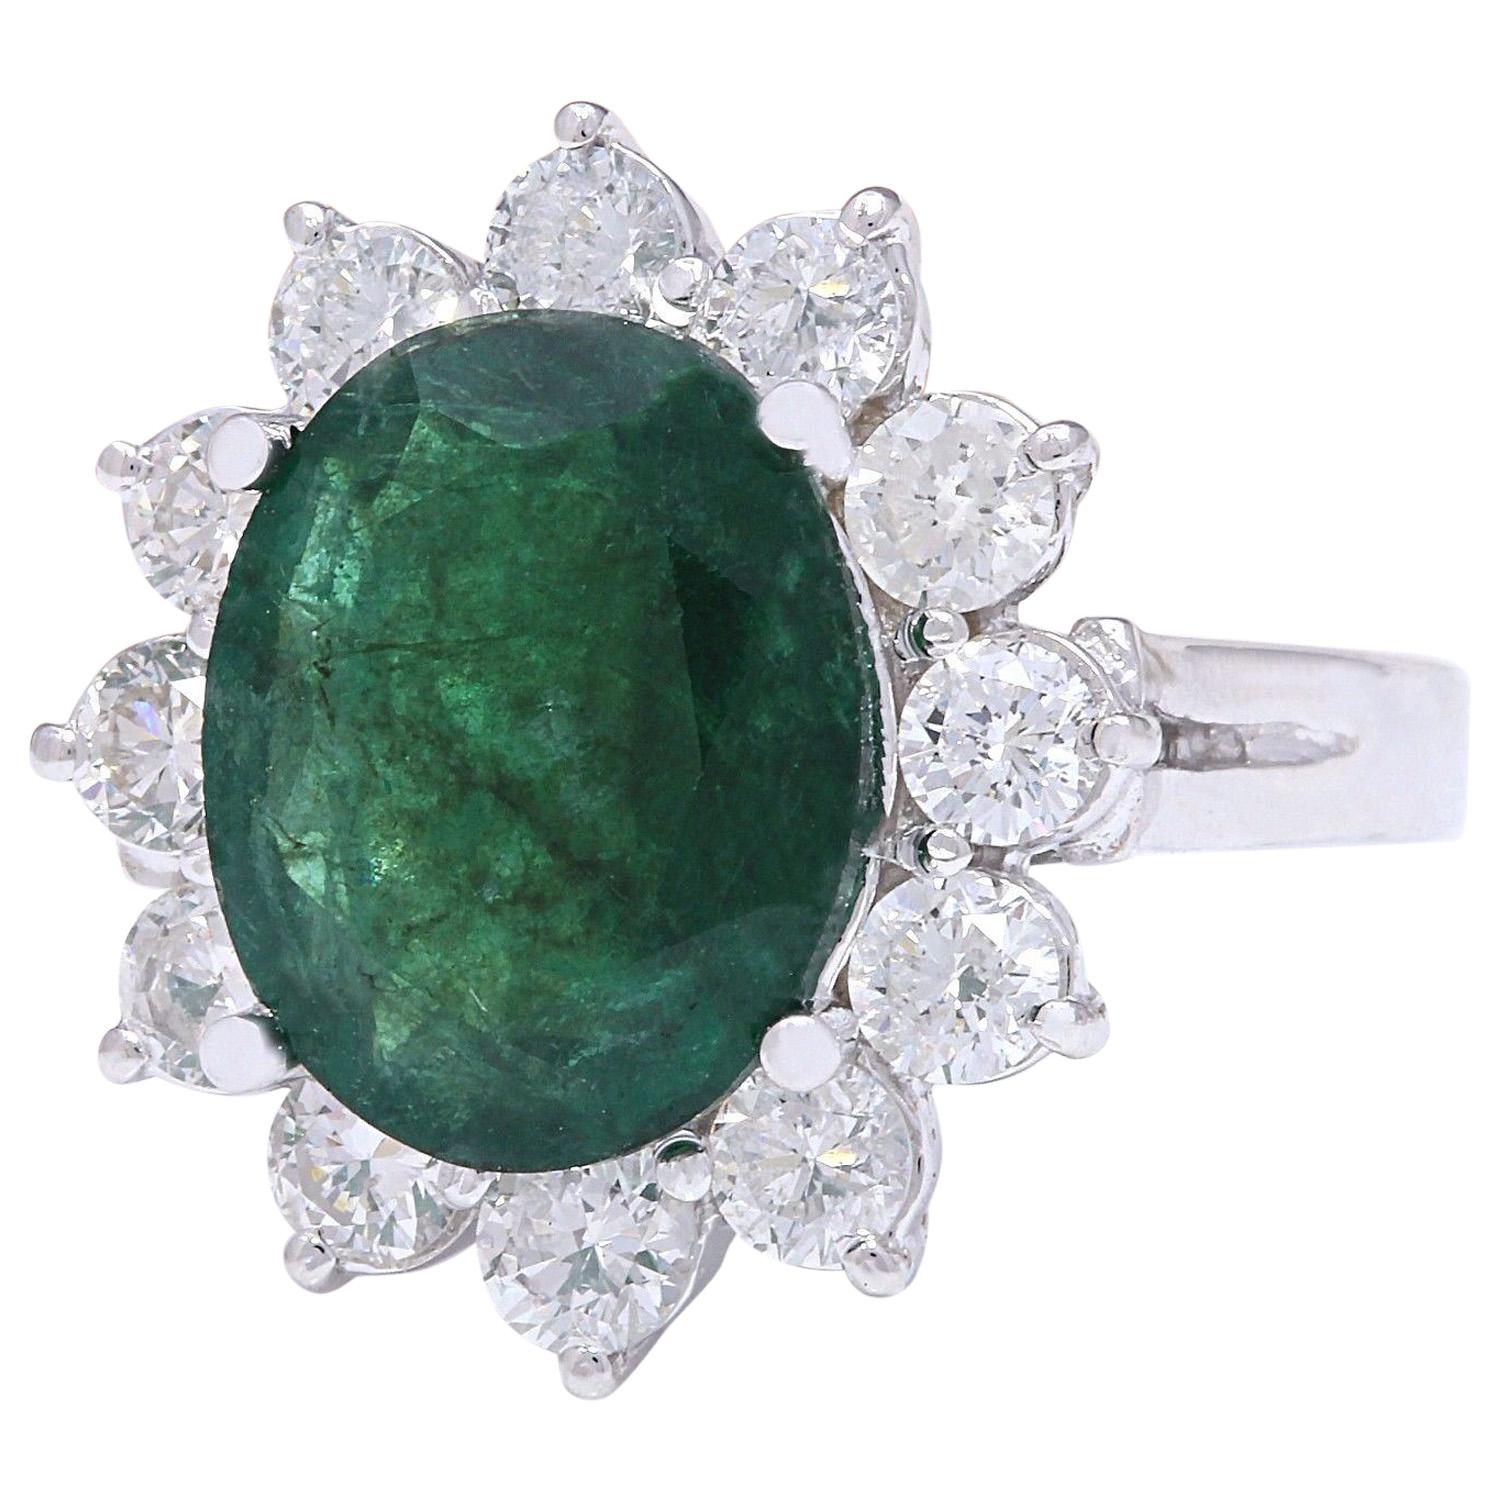 Dieser elegante Ring ist mit einem natürlichen Smaragd von 4,68 Karat besetzt, der in glänzendes 14-Karat-Weißgold gefasst ist. Der bezaubernde ovale Smaragd mit einem Gewicht von 3,48 Karat und einer Größe von 11,00 x 9,00 mm besticht durch seinen